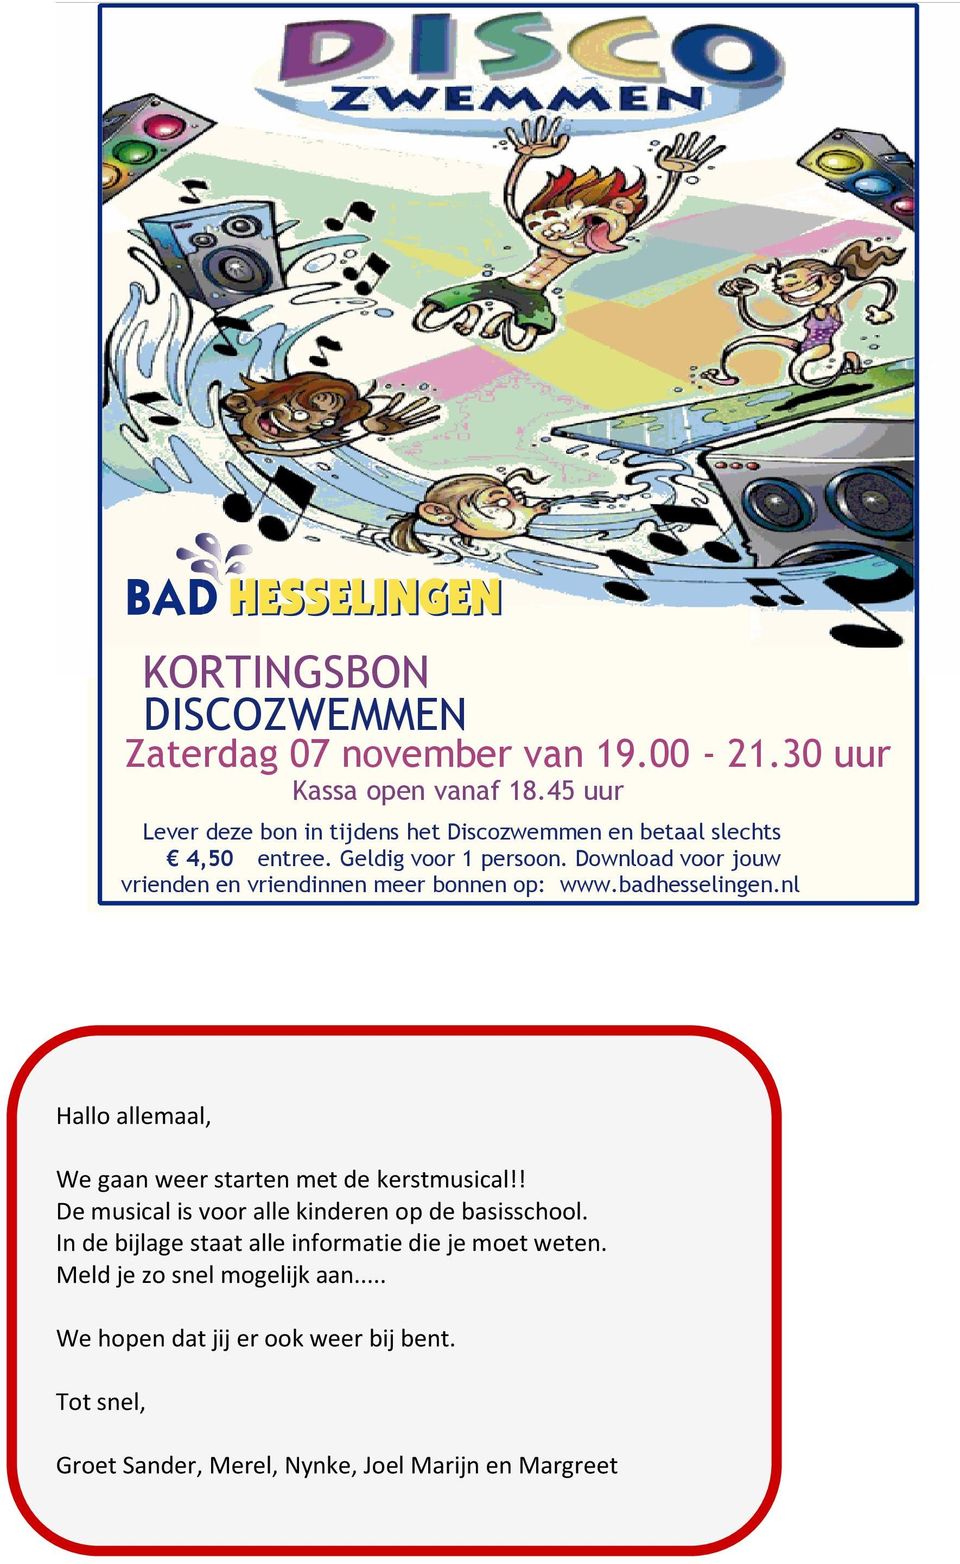 Download voor jouw vrienden en vriendinnen meer bonnen op: www.badhesselingen.nl Hallo allemaal, We gaan weer starten met de kerstmusical!